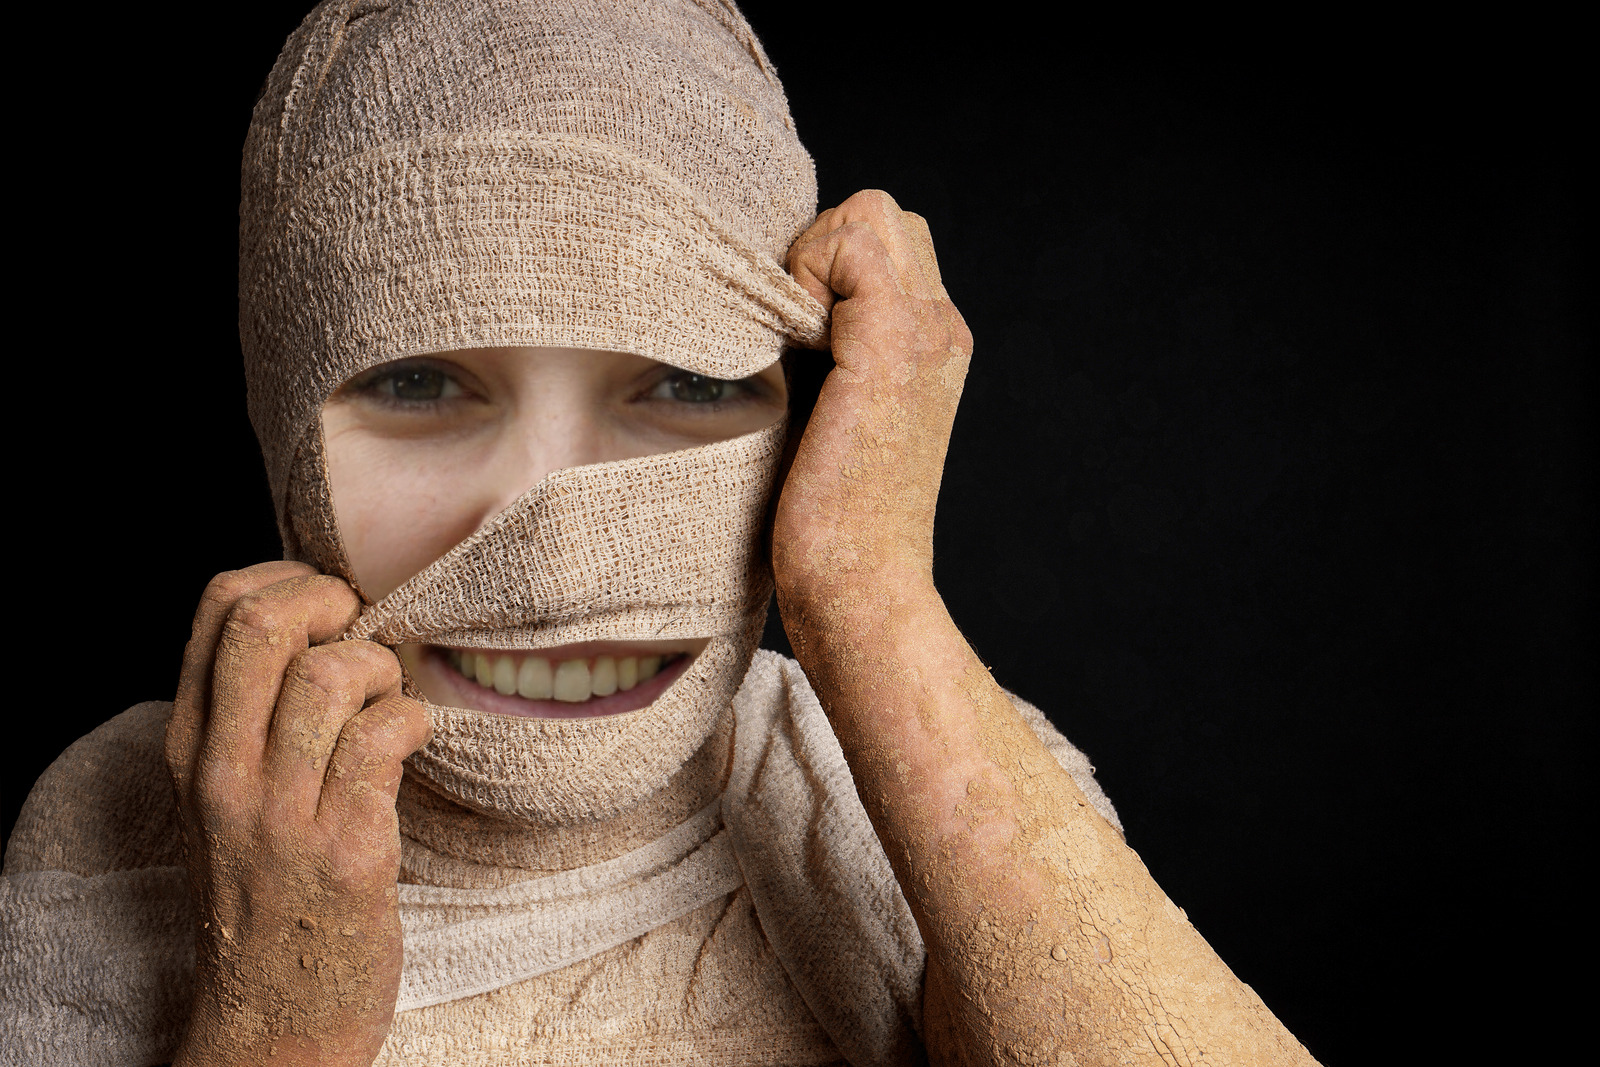 Annalyn Frame mummy